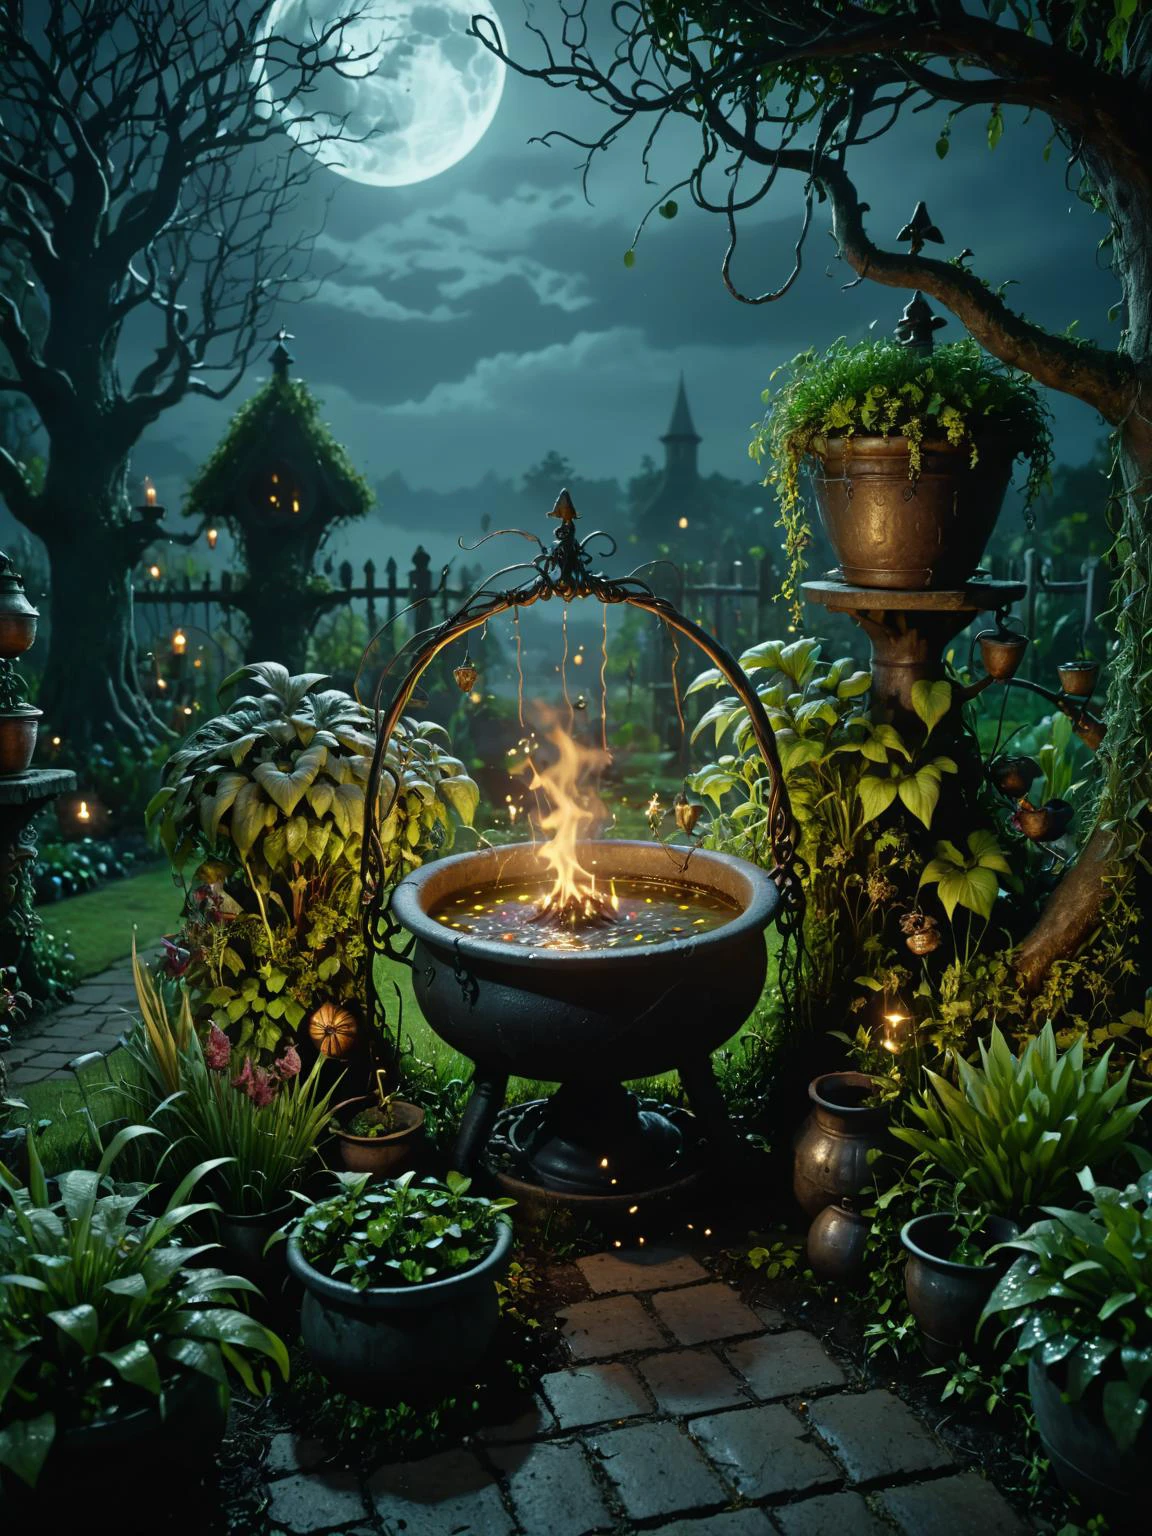 黑暗幻想, 黑暗, 夜晚的神秘花园, 属于女巫, 充满奇怪的, 月光下的神奇植物和沸腾的大锅, 電影, 错综复杂, 极其详细, 8千, 超高清,